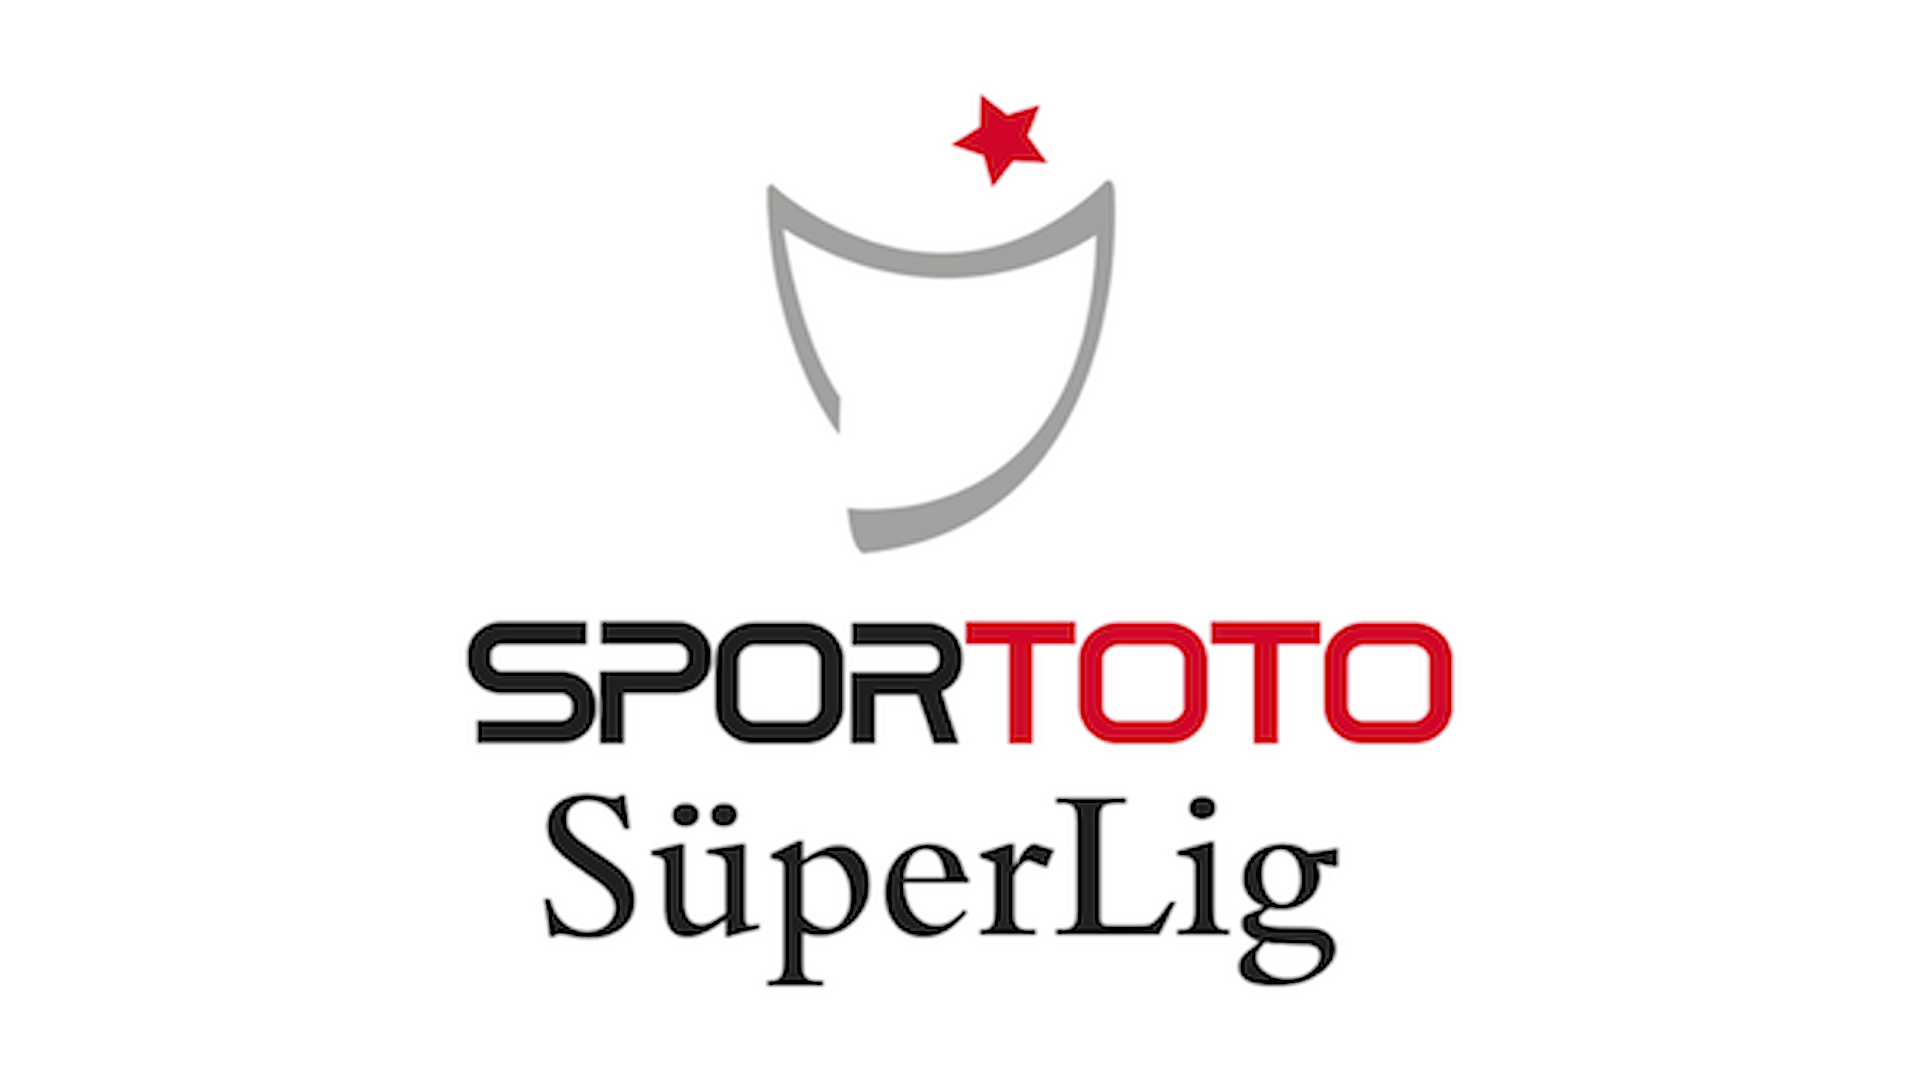 Kayserispor – Antalyaspor (Pick, Prediction, Preview) Preview